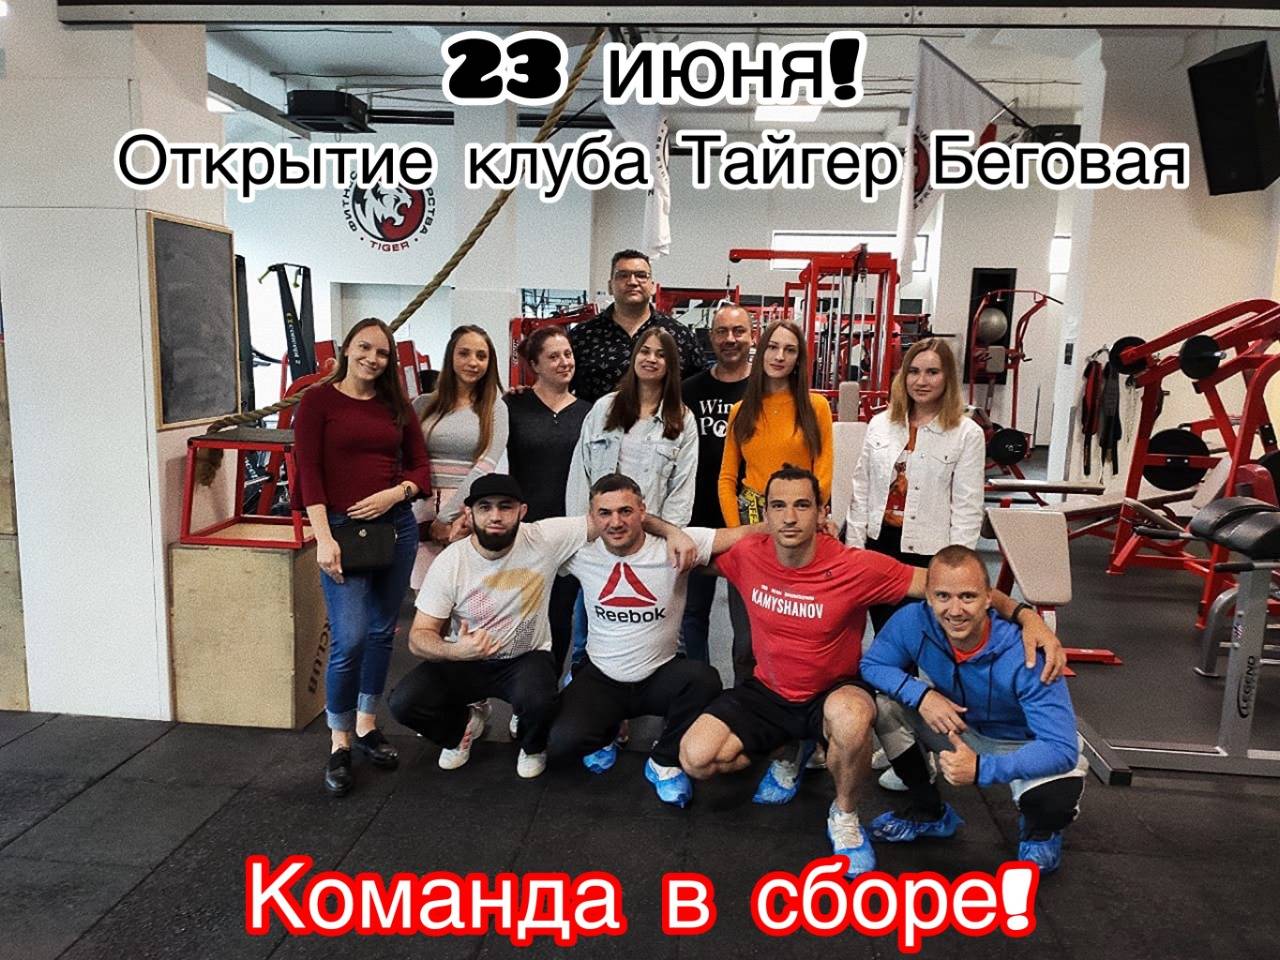 Когда откроют фитнес-клубы и спортзалы в москве после карантина, рассказал столичный мэр